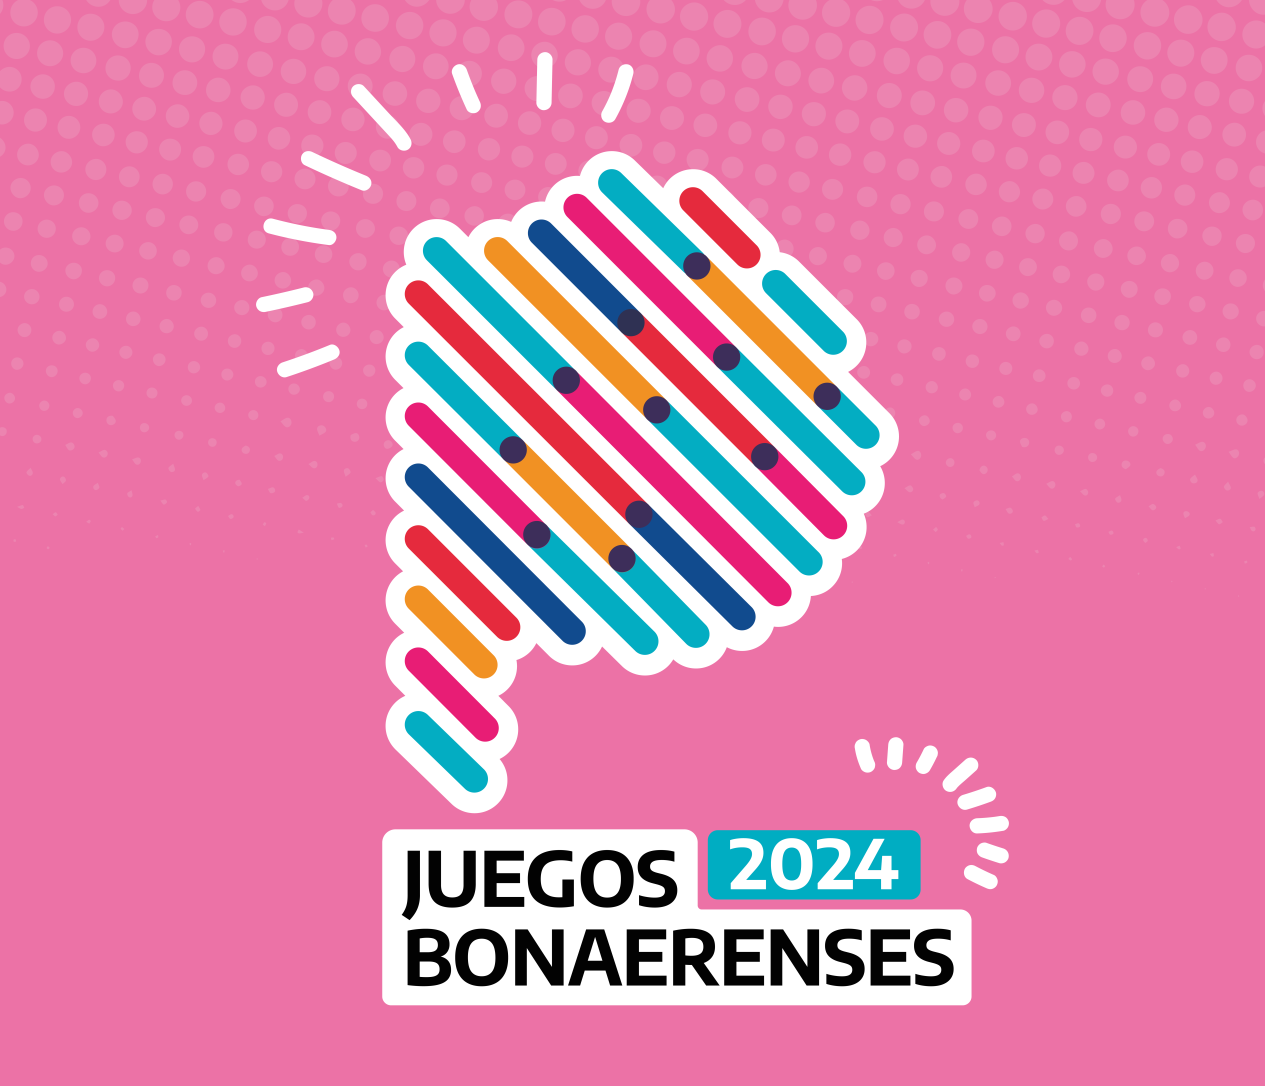 Chaves: 1380 inscriptos para los Juegos Bonaerenses 2024